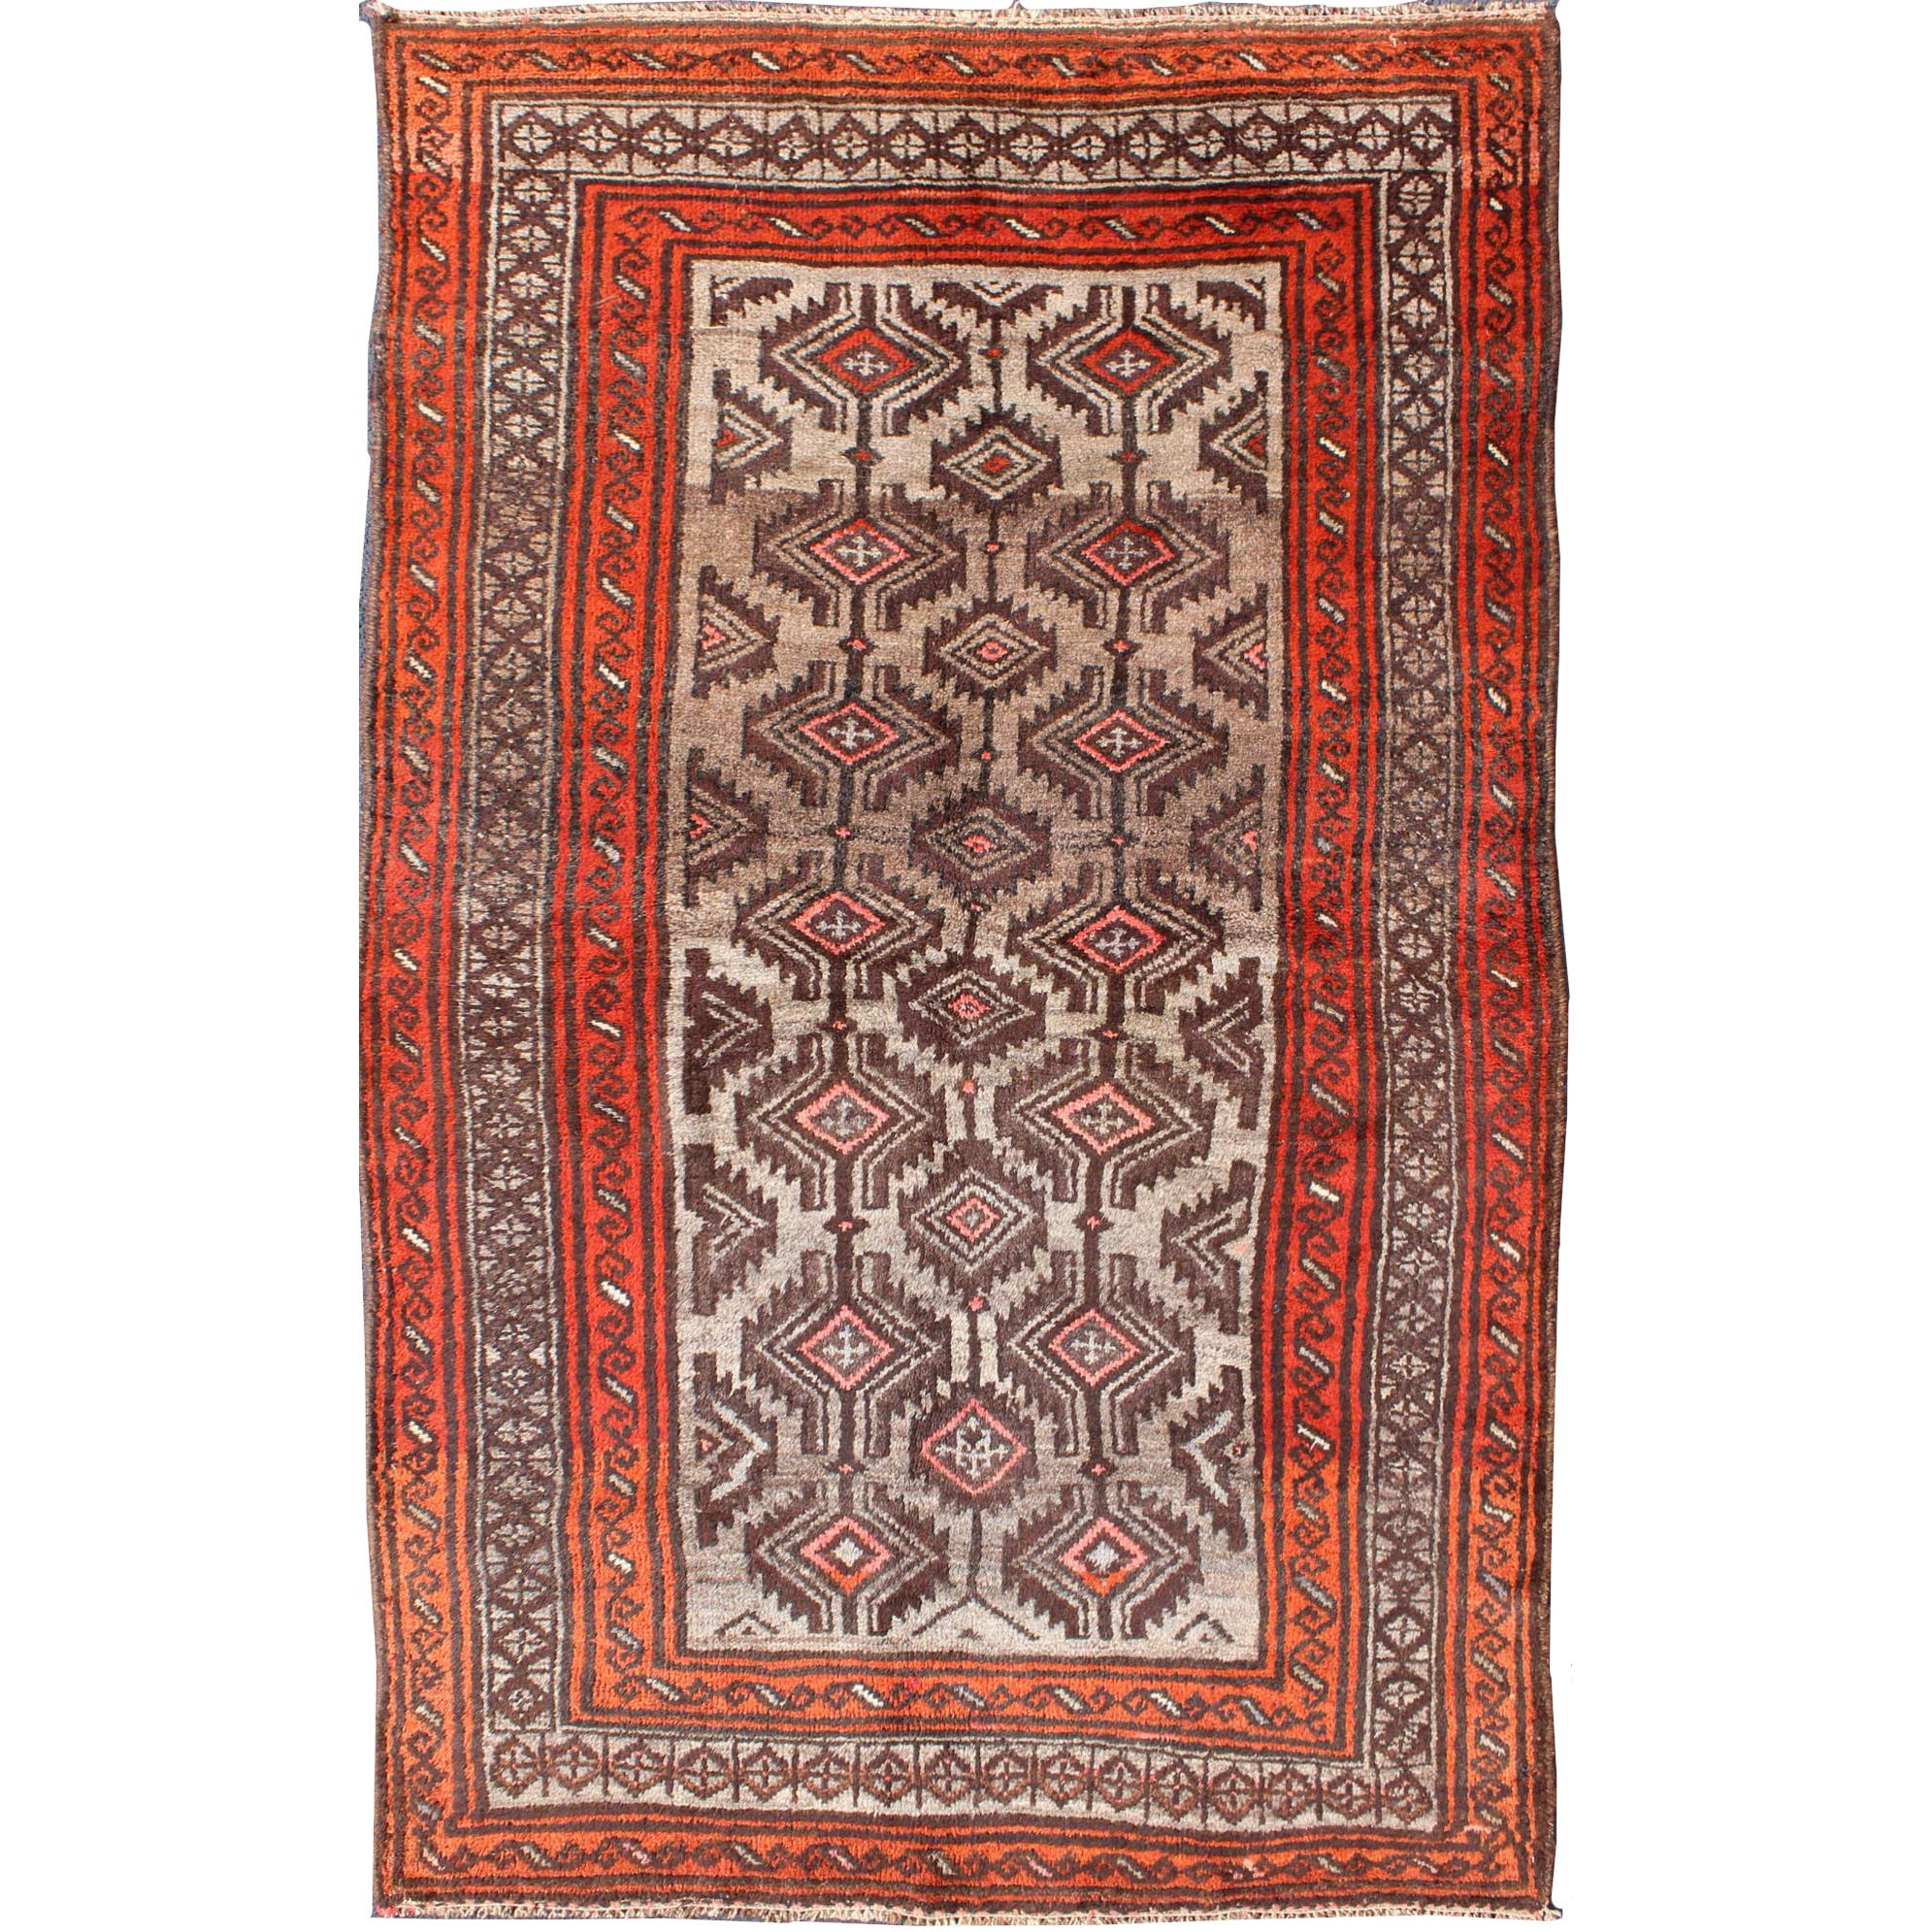 Persischer Shiraz-Teppich in Orange und Braun mit Stammesmedaillons, gebrannt